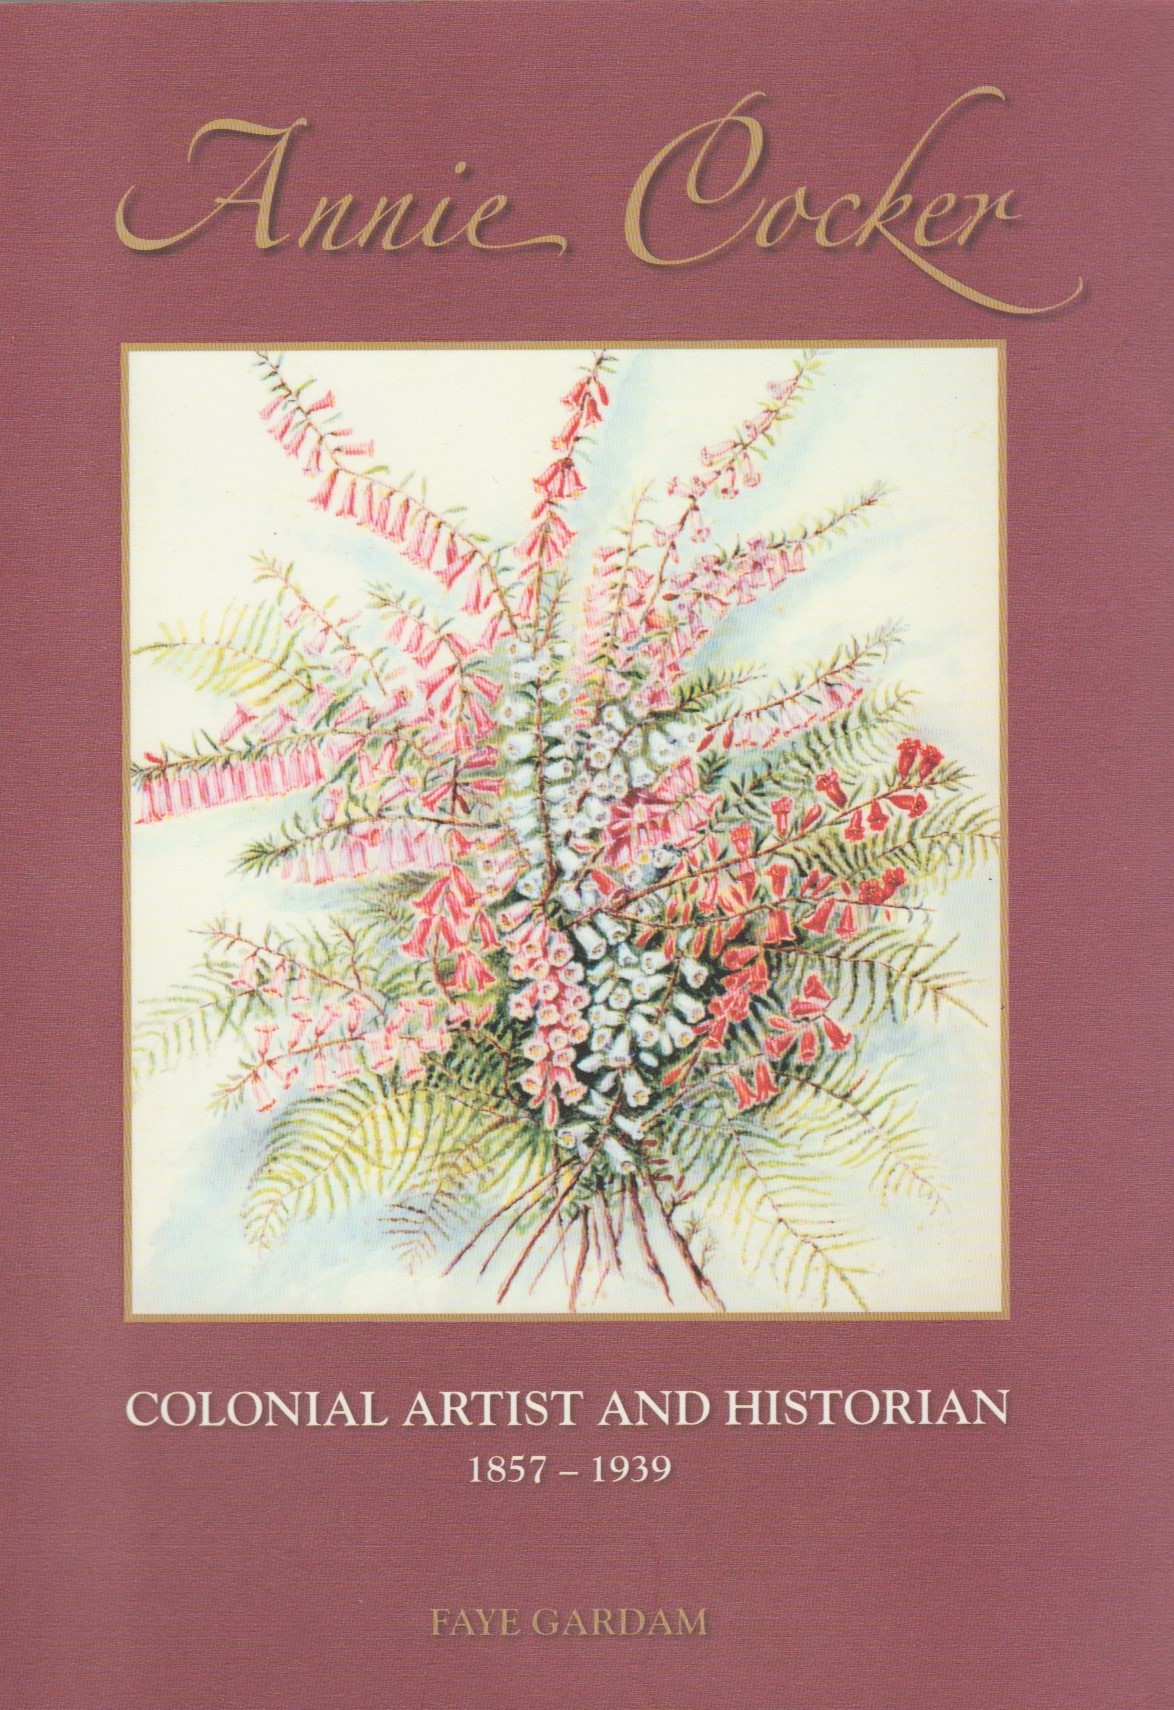 Annie Cocker - Colonial artist & historian 1857-1939